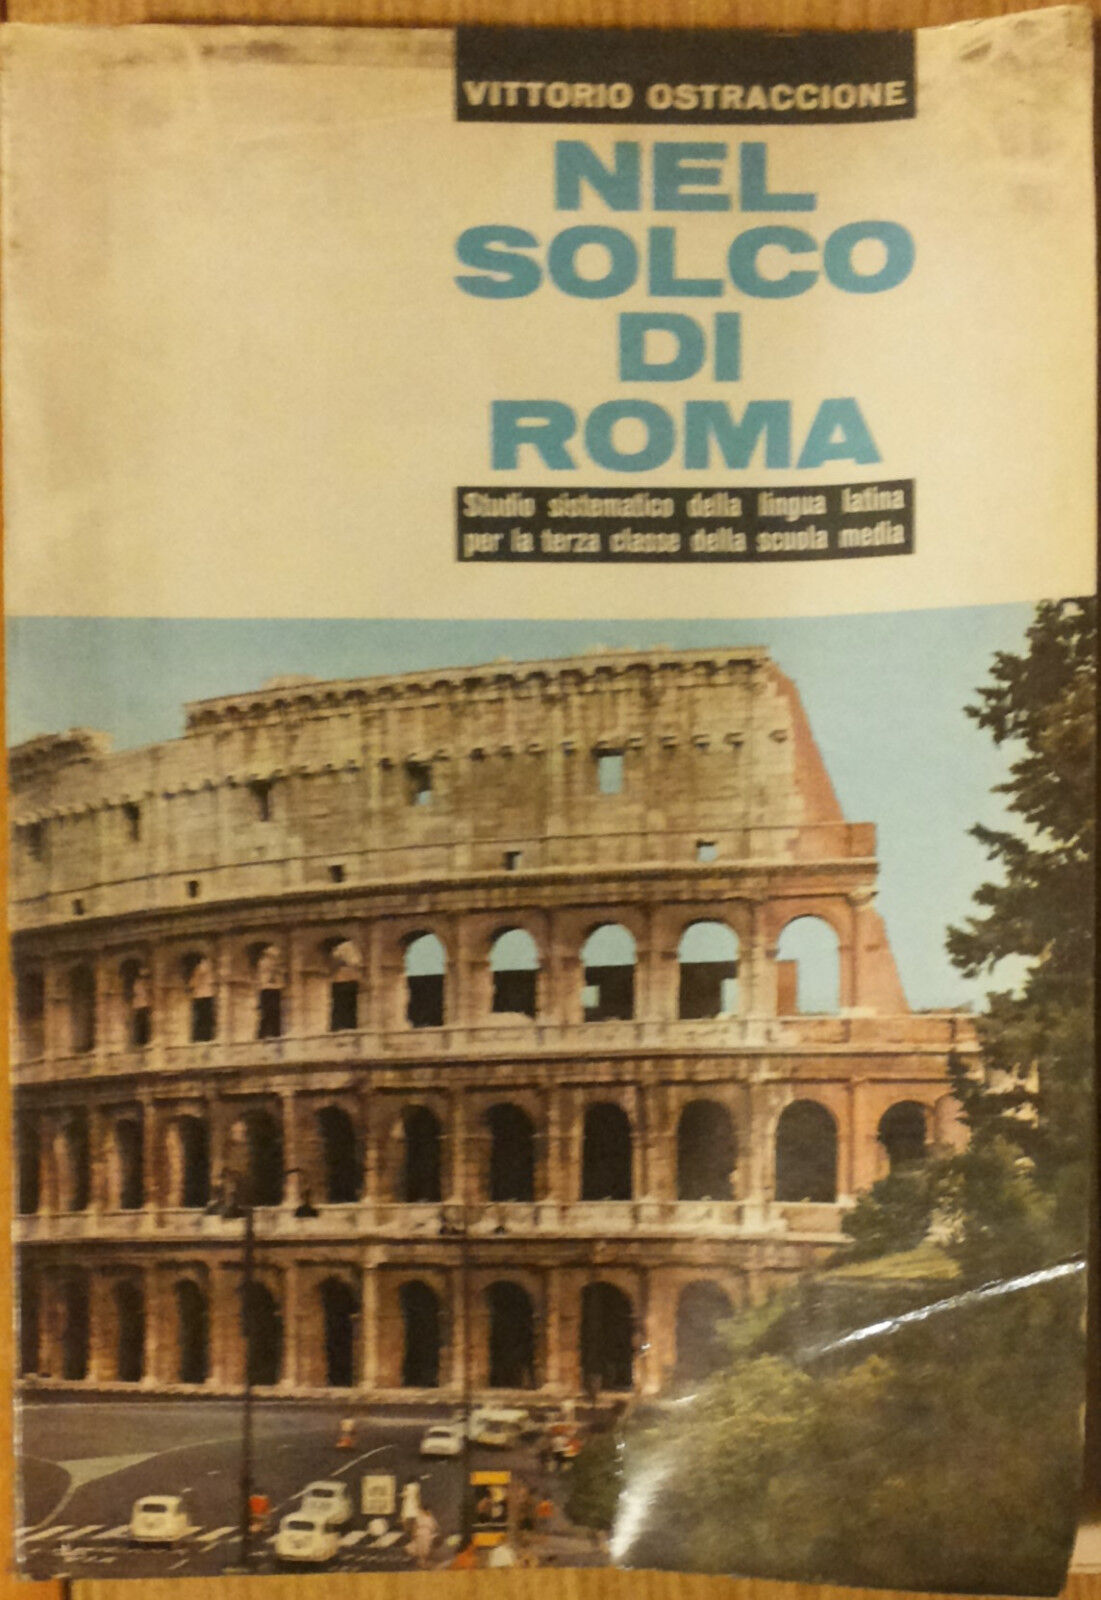 Nel solco di Roma - Ostraccione - Societ? Editrice Internazionale,1965 - R